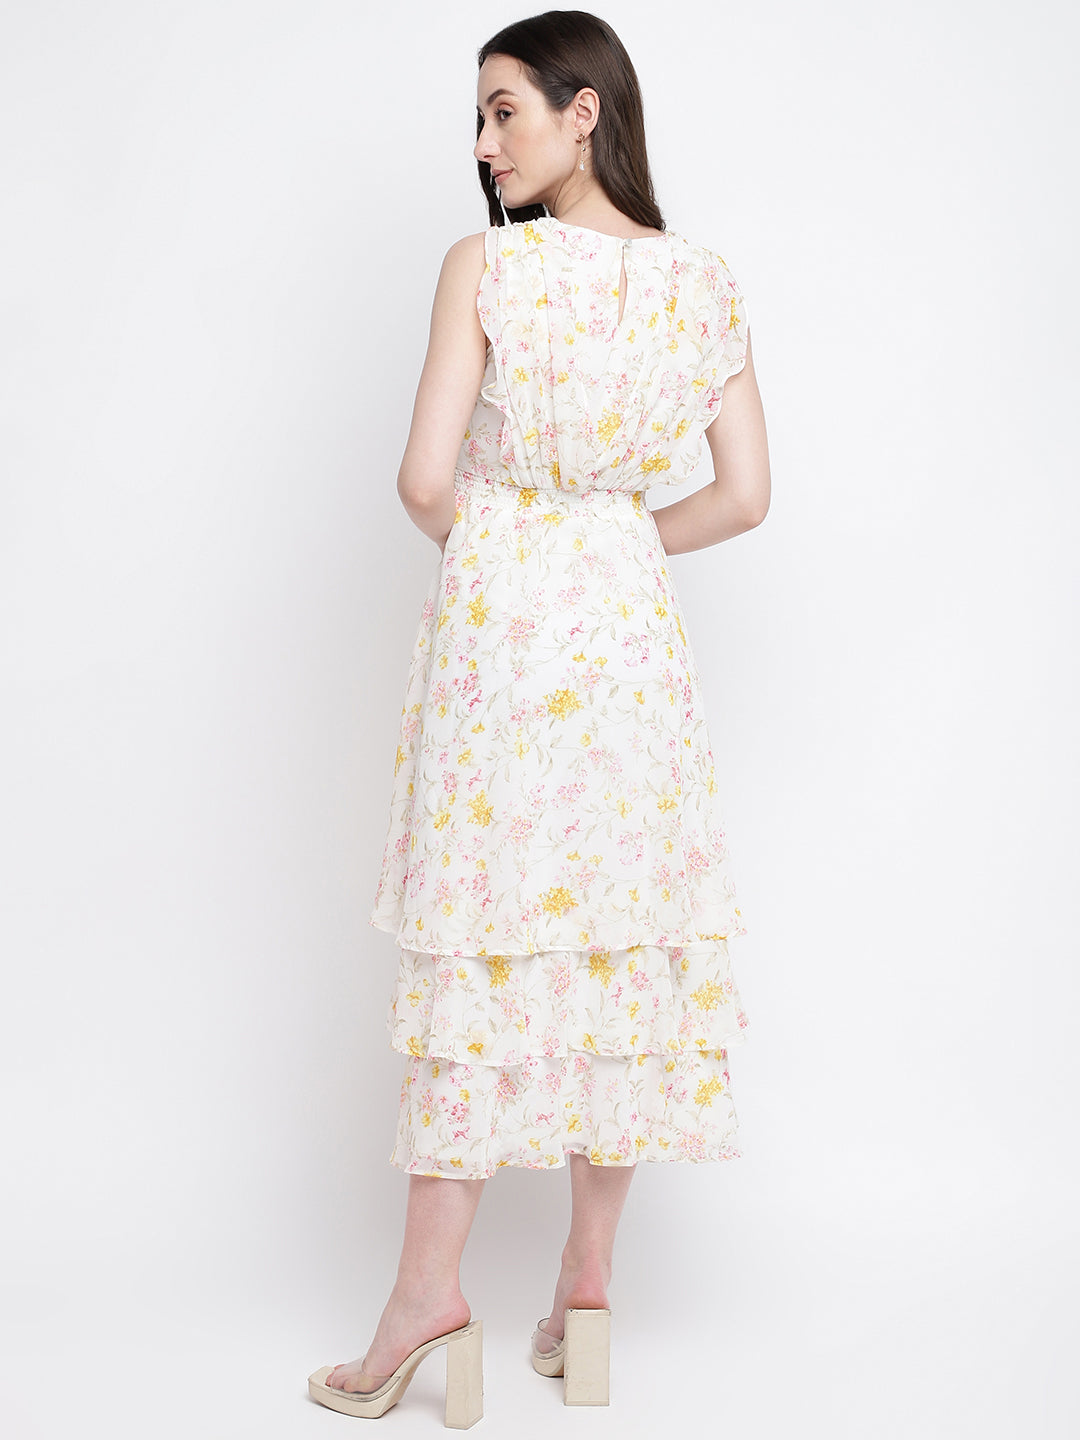 Ivory Cap Sleeve Floral Print Maxi Dress